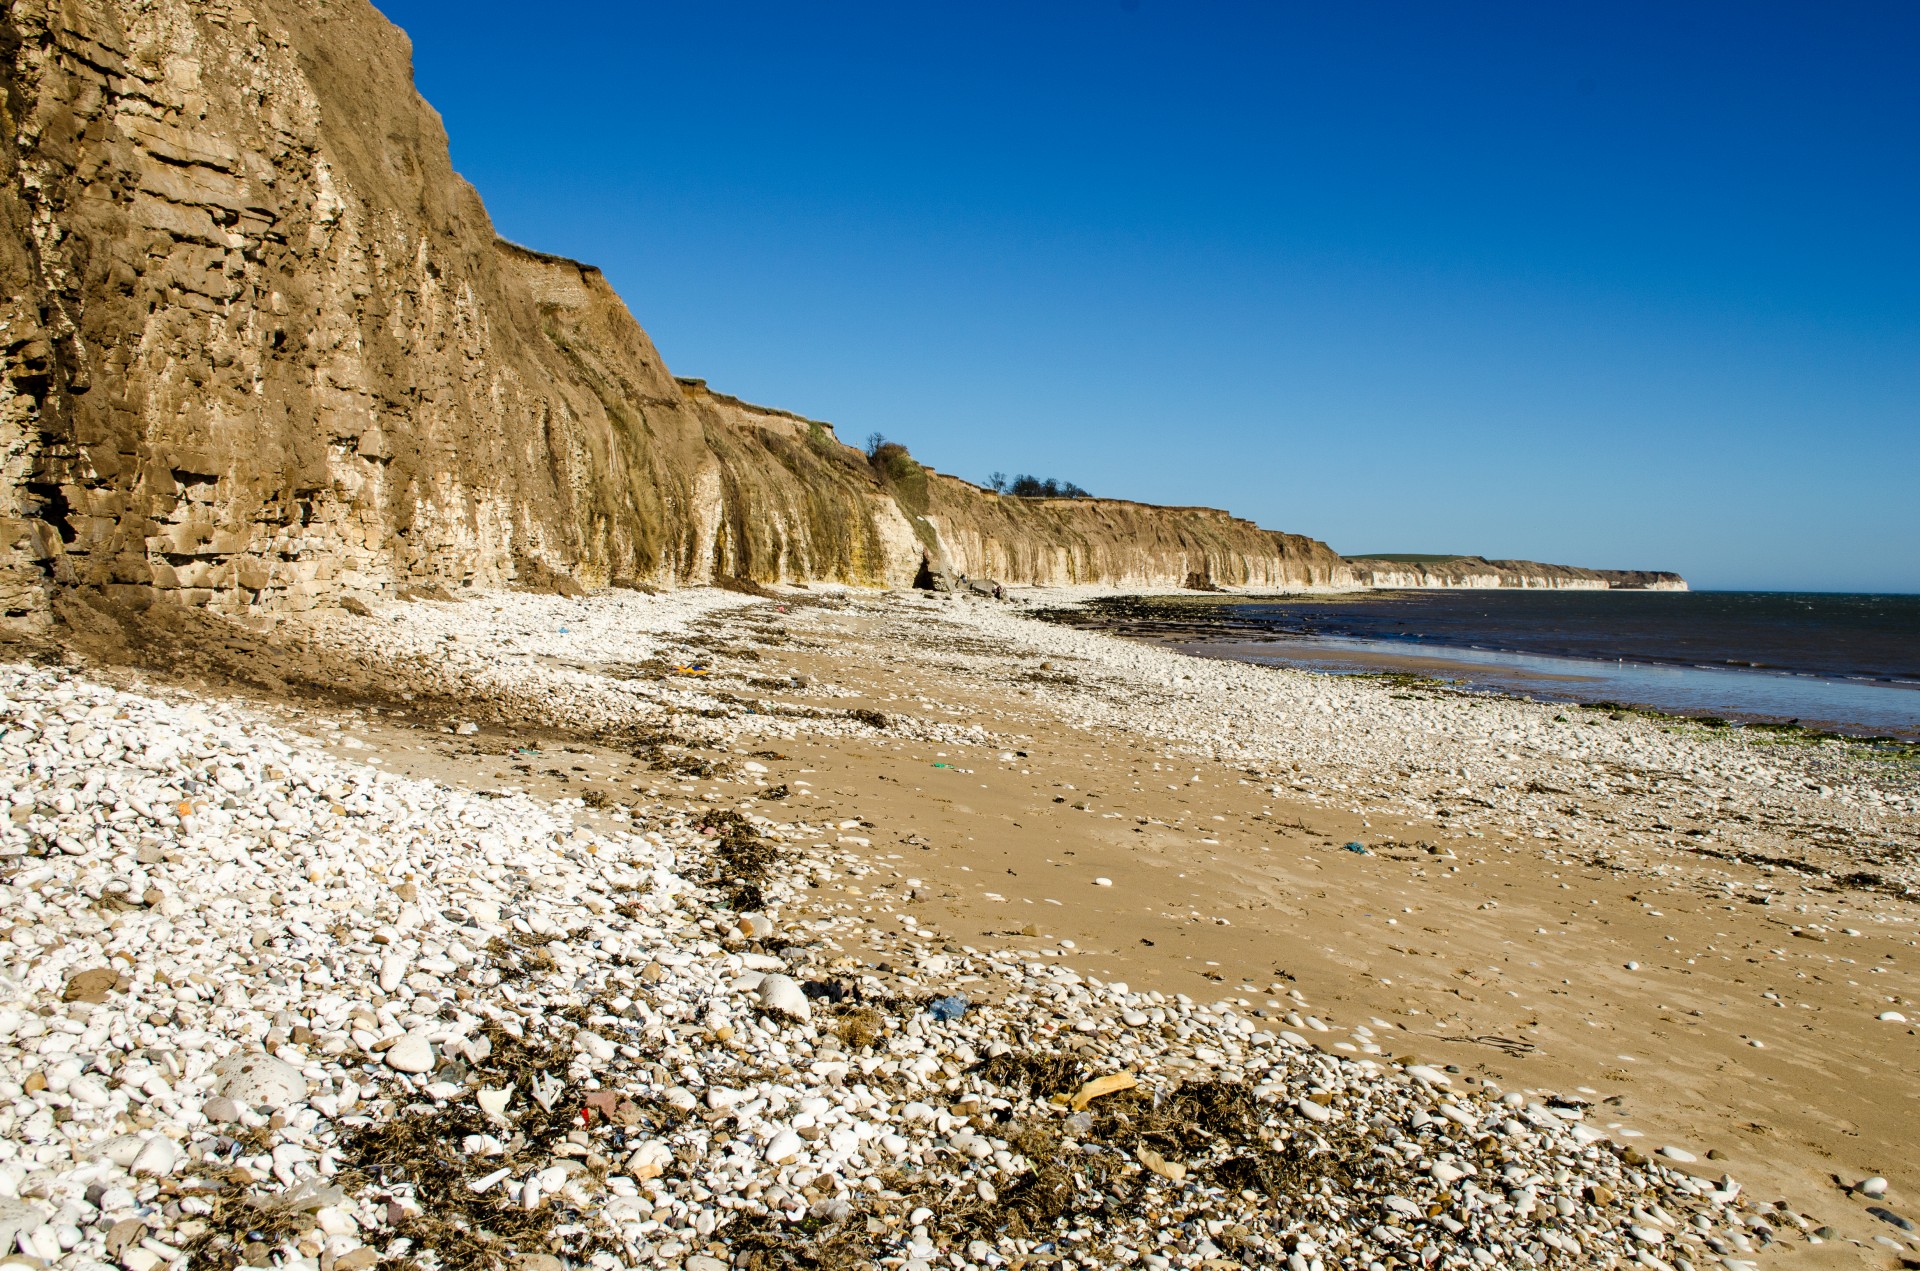 Берег лове. Камни на пляже. Слоистый песок на побережье. Анаклия берег с песком. Приморская волна.